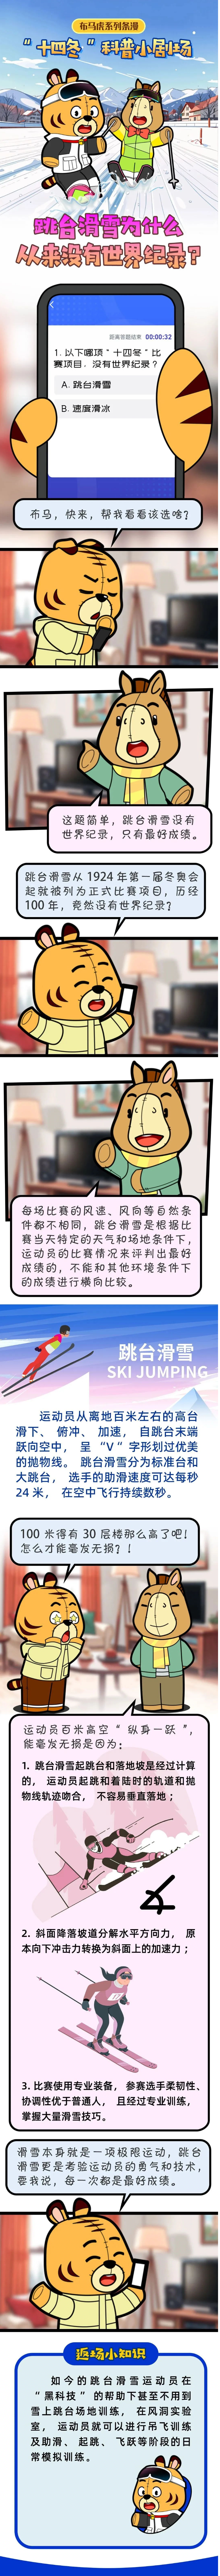 跳台滑雪为什么从来没有世界纪录？一图解答